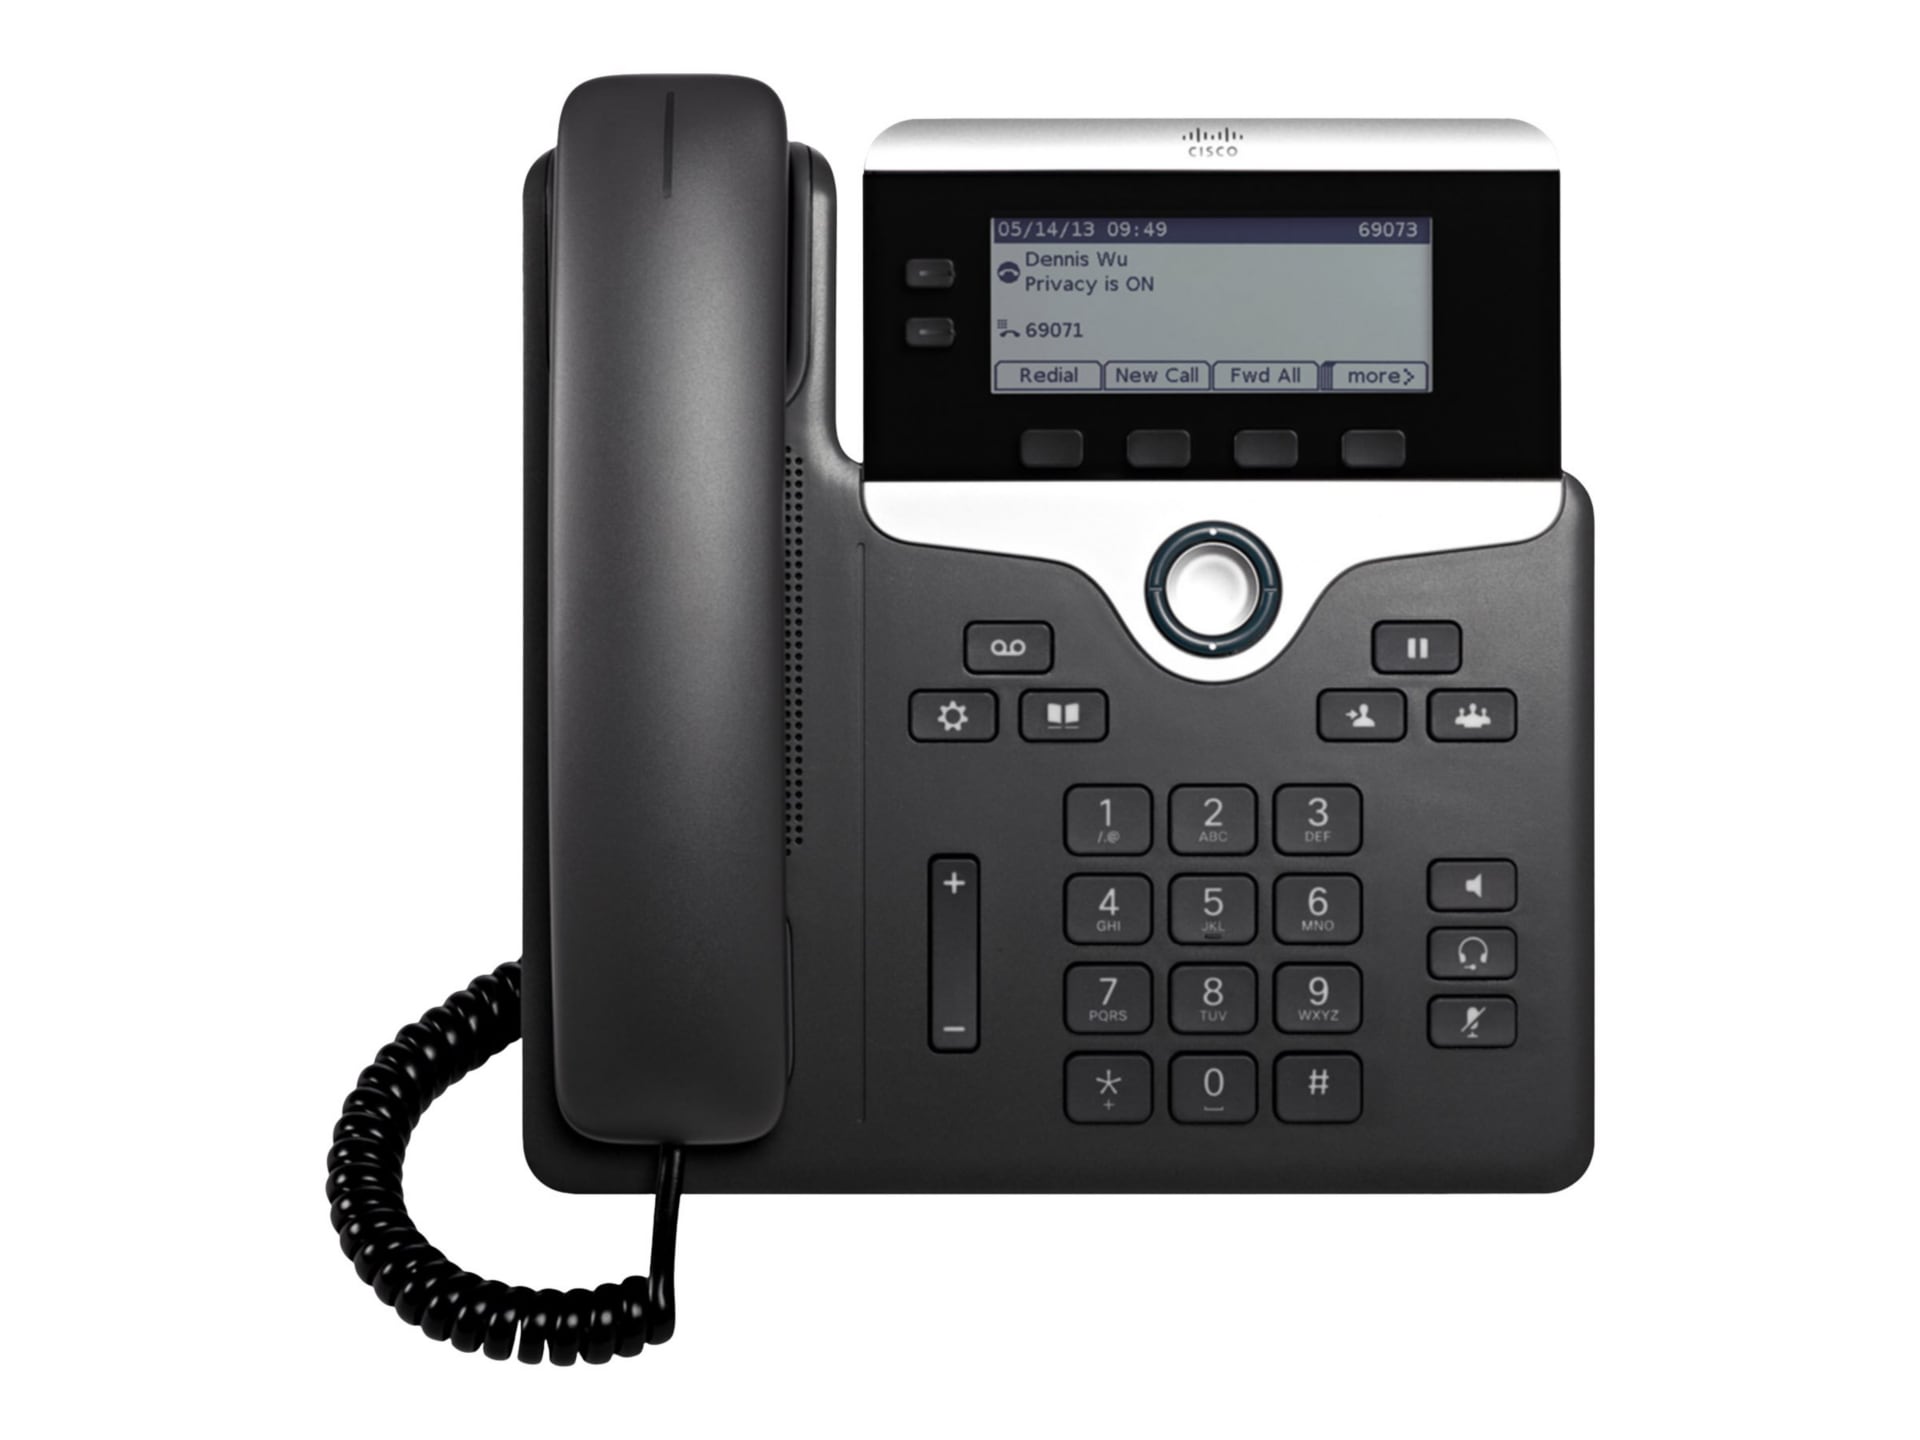 Cisco 7821 VoIP Phone